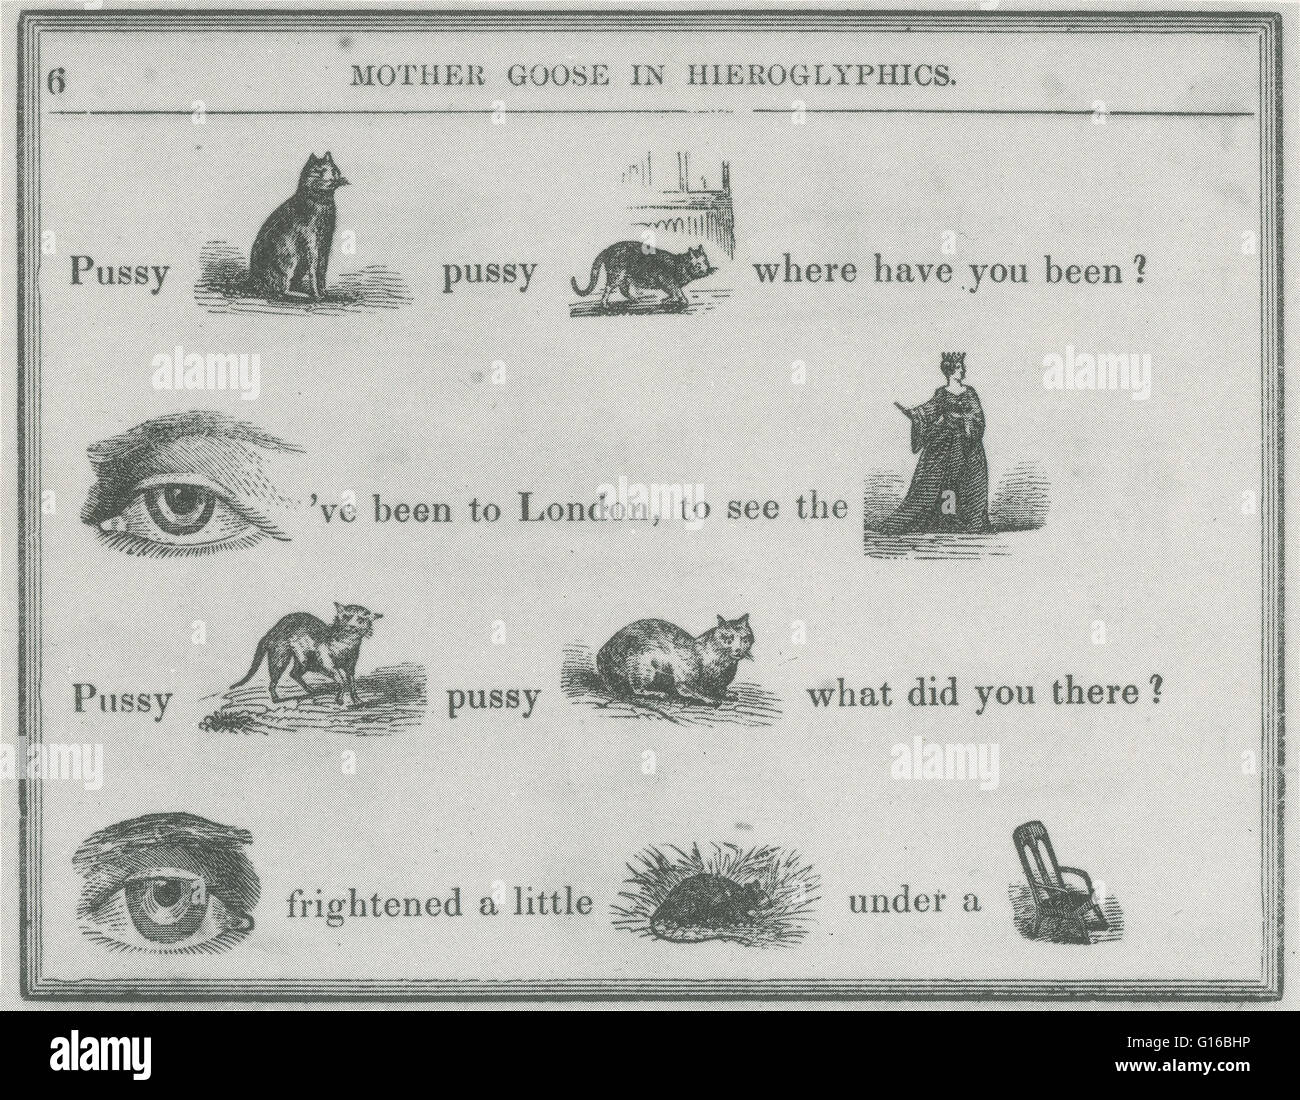 Mother Goose in Hieroglyphen ist ein Buch für Kinder von E.F. Bleiler, ursprünglich veröffentlicht im Jahre 1849. Das Buch enthält bekannte Kinderreime, geschrieben mit Bildern (ca. 400 detaillierte Holzschnitte) bestimmte Wörter (Rebus) zu ersetzen. Ein Rebus bezieht sich auf die Stockfoto